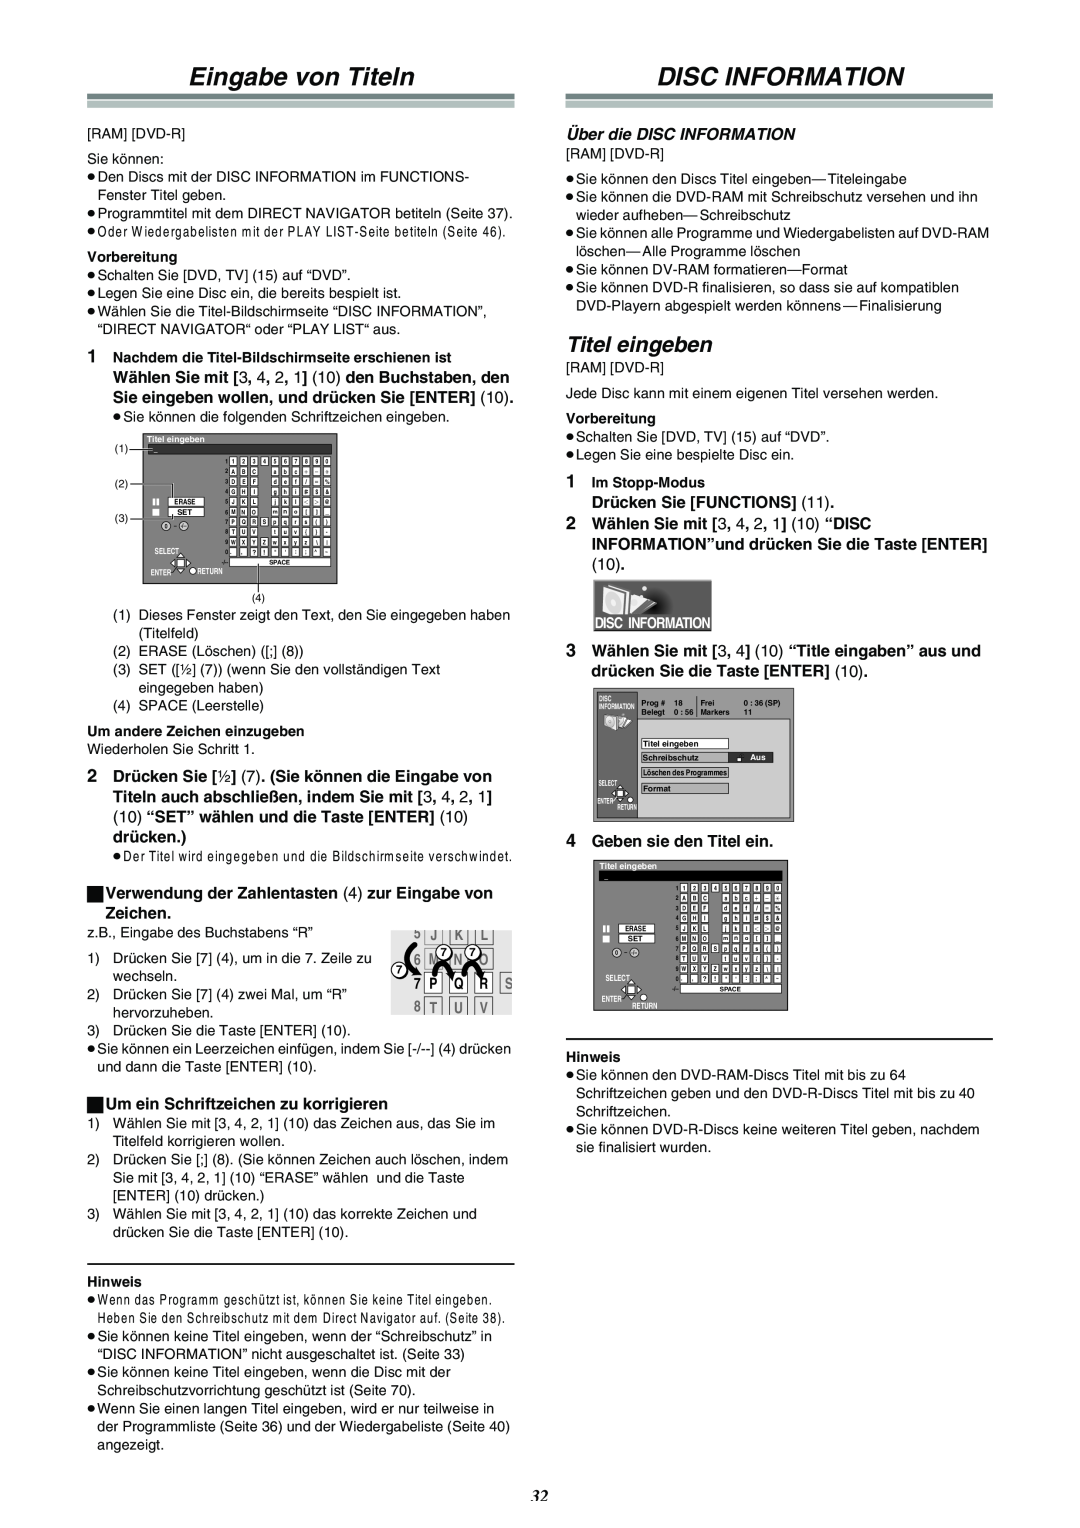 Panasonic DMR-E30 manual Eingabe von Titeln, Disc Information, Titel eingeben 